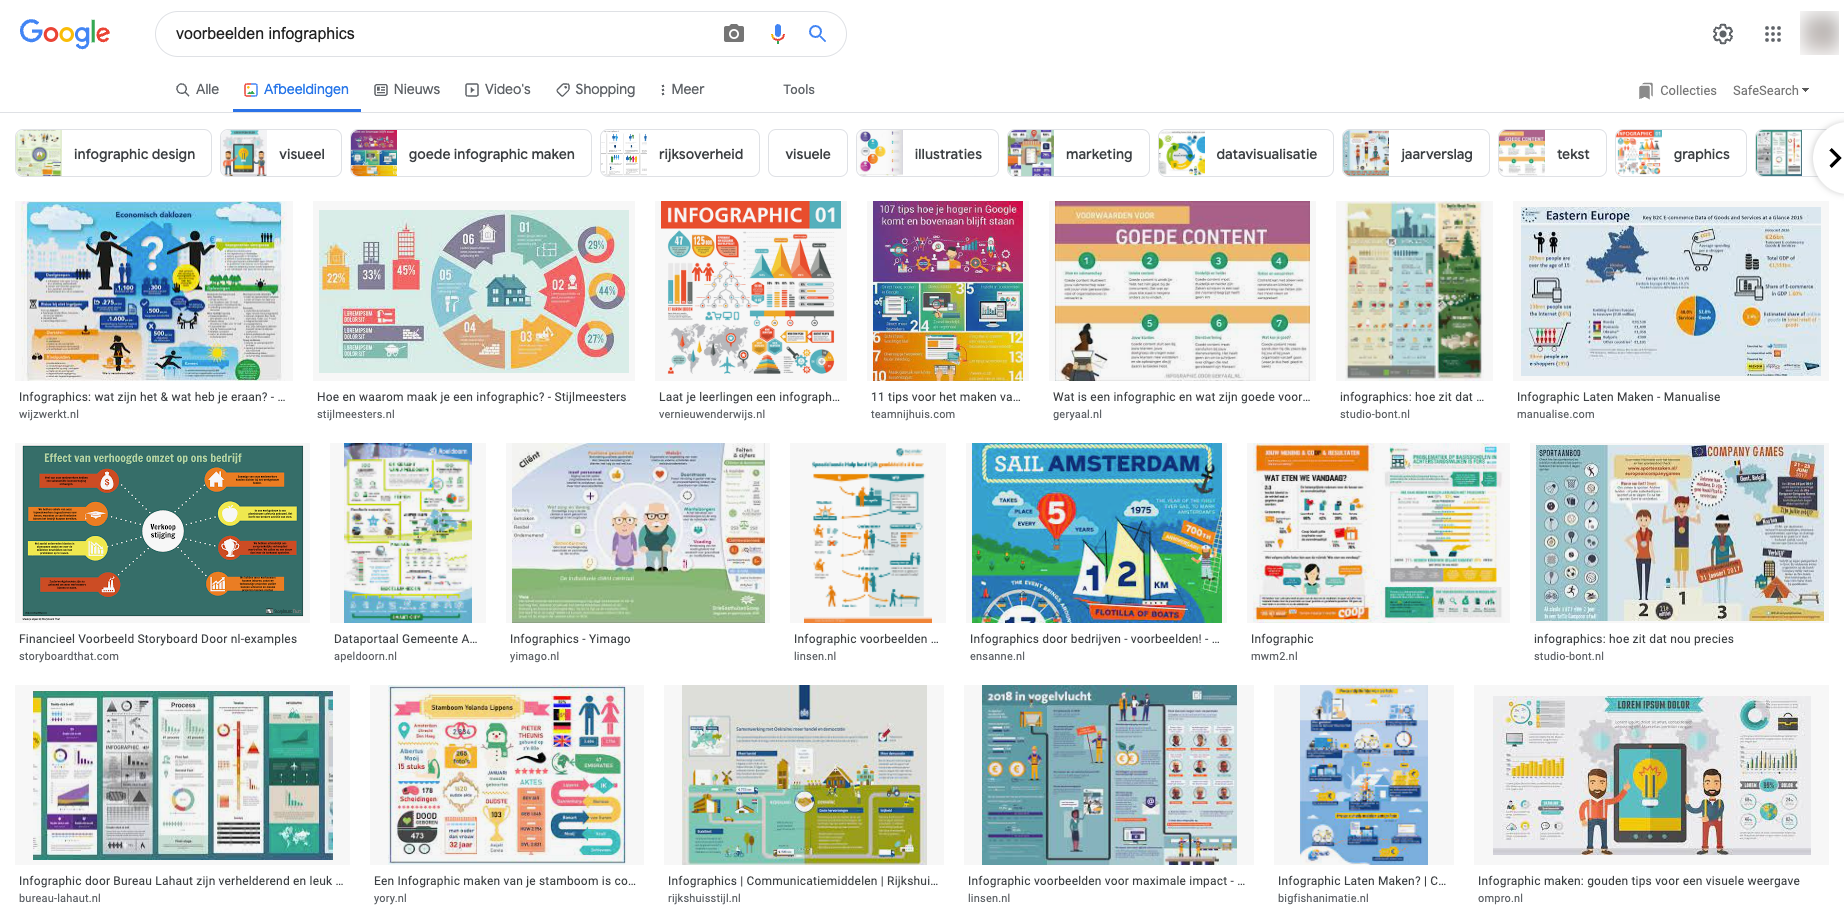 schermafbeelding Google afbeeldingen infographics